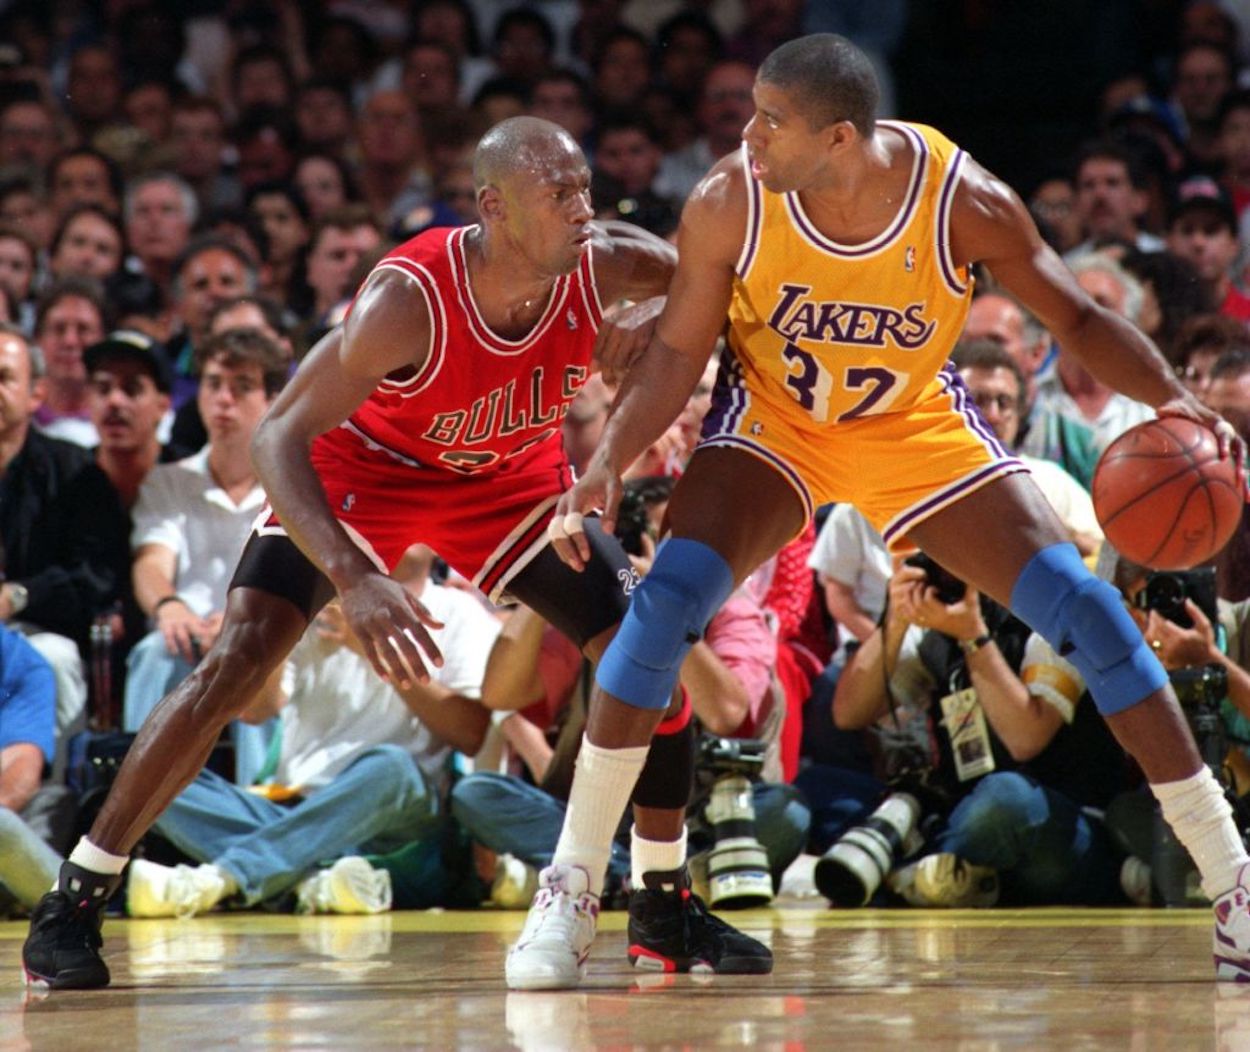 Magic Johnson (R) backs down Michael Jordan (L) during a Lakers-Bulls game.